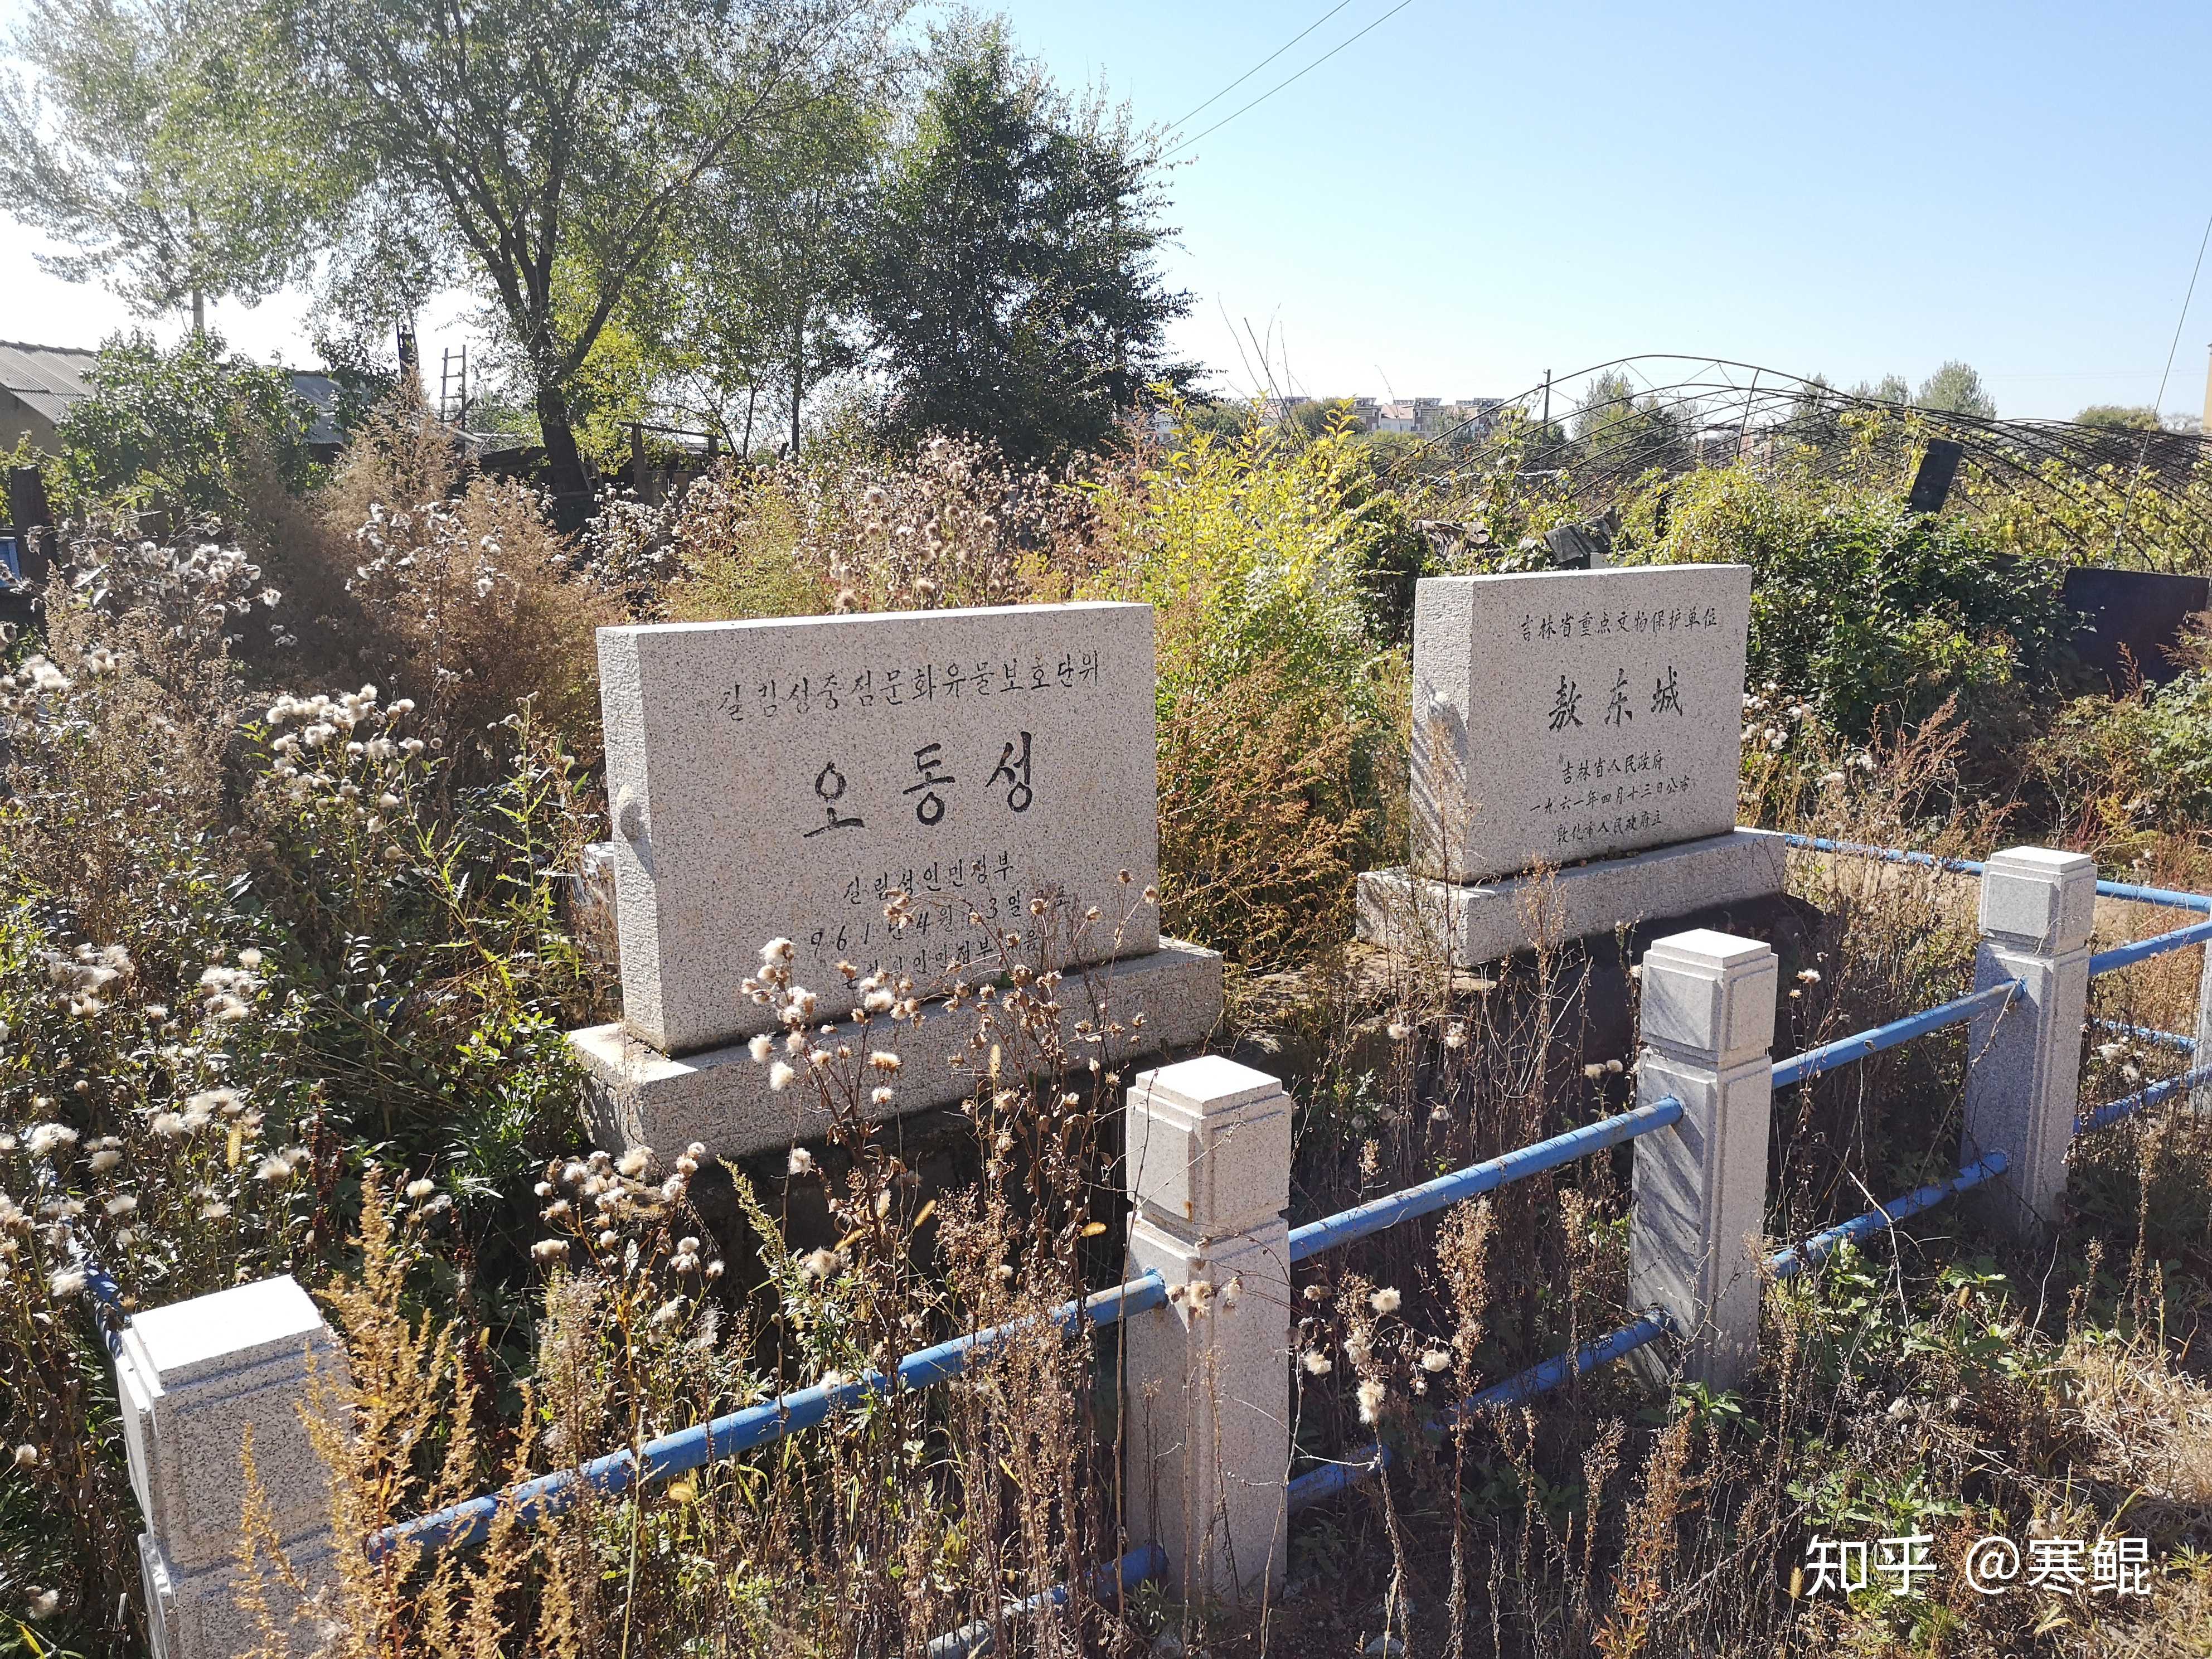 寒鲲 的想法: 六顶山古墓群是渤海国早期贵族墓葬,在渤… - 知乎